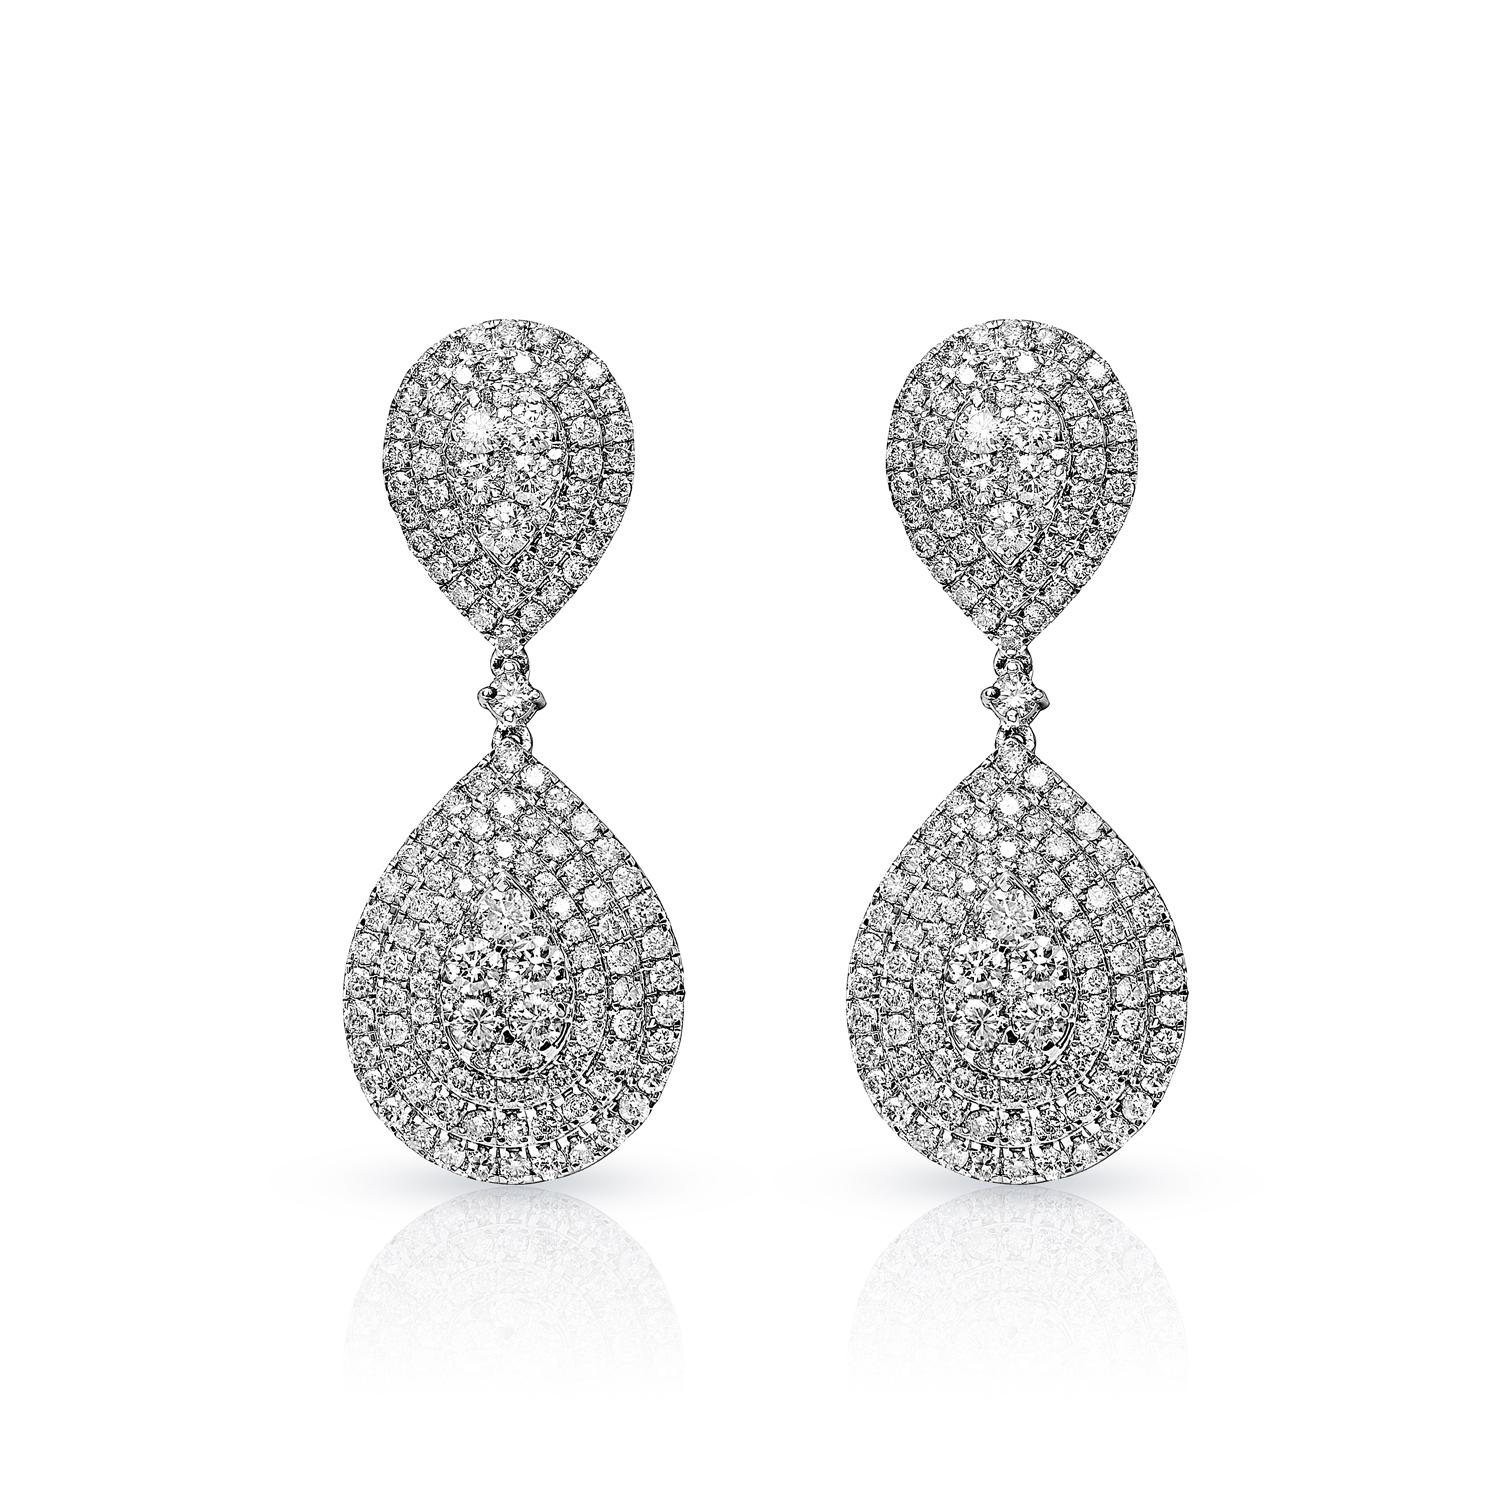 Boucles d'oreilles en diamant pour femmes qui ne manqueront pas de faire parler d'elles. Ces boucles d'oreilles sont à la fois modernes et élégantes, avec des diamants pavés, créant un look hautement poli, à la fois féminin et fort. Les pierres